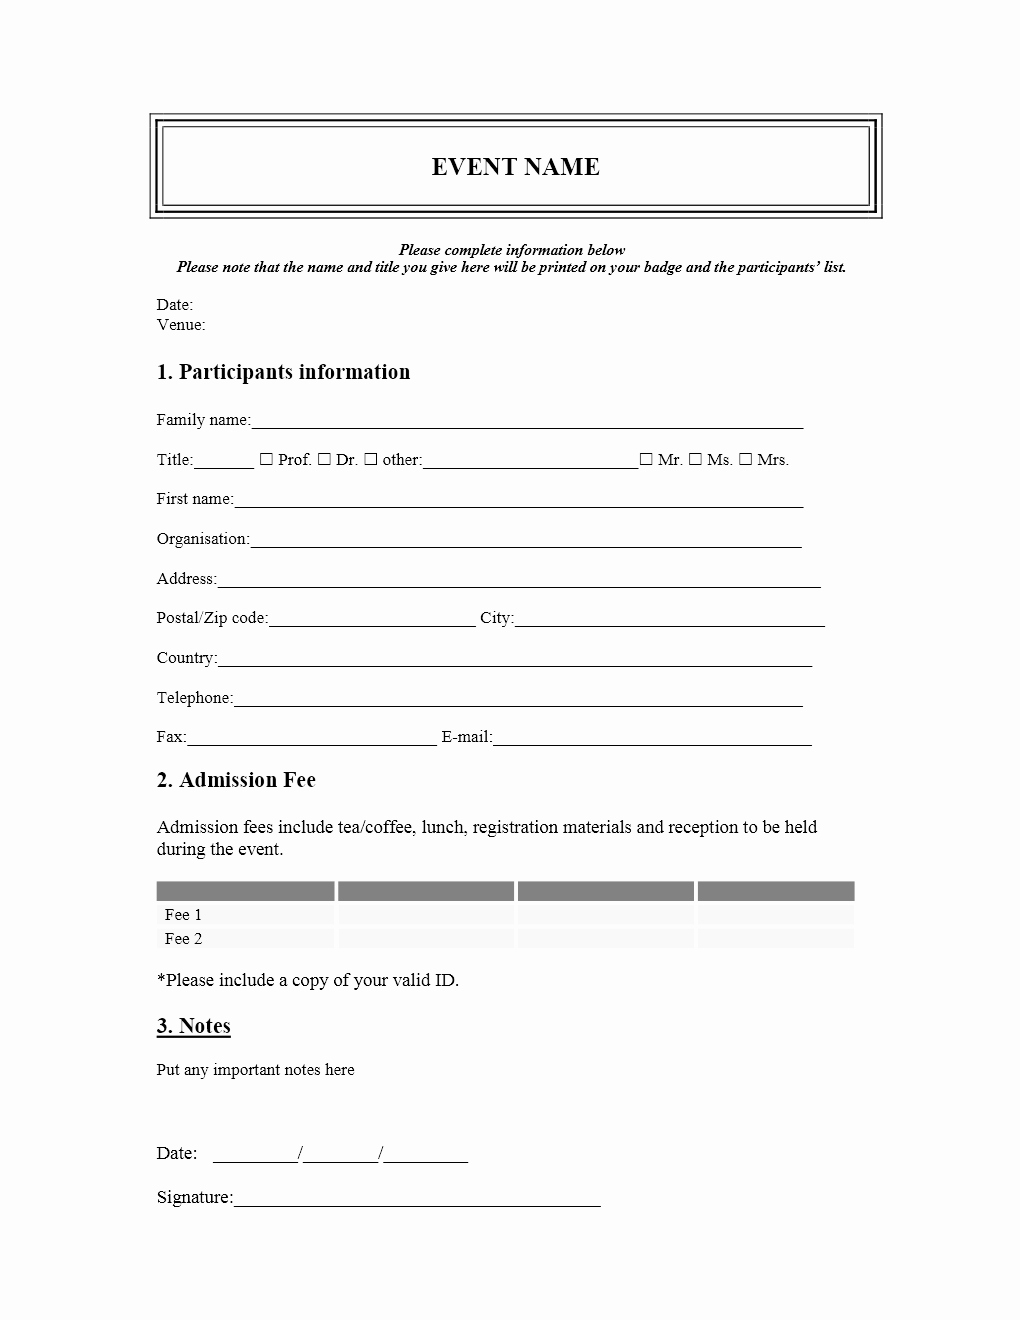 Event Registration form Template Lovely event Registration form